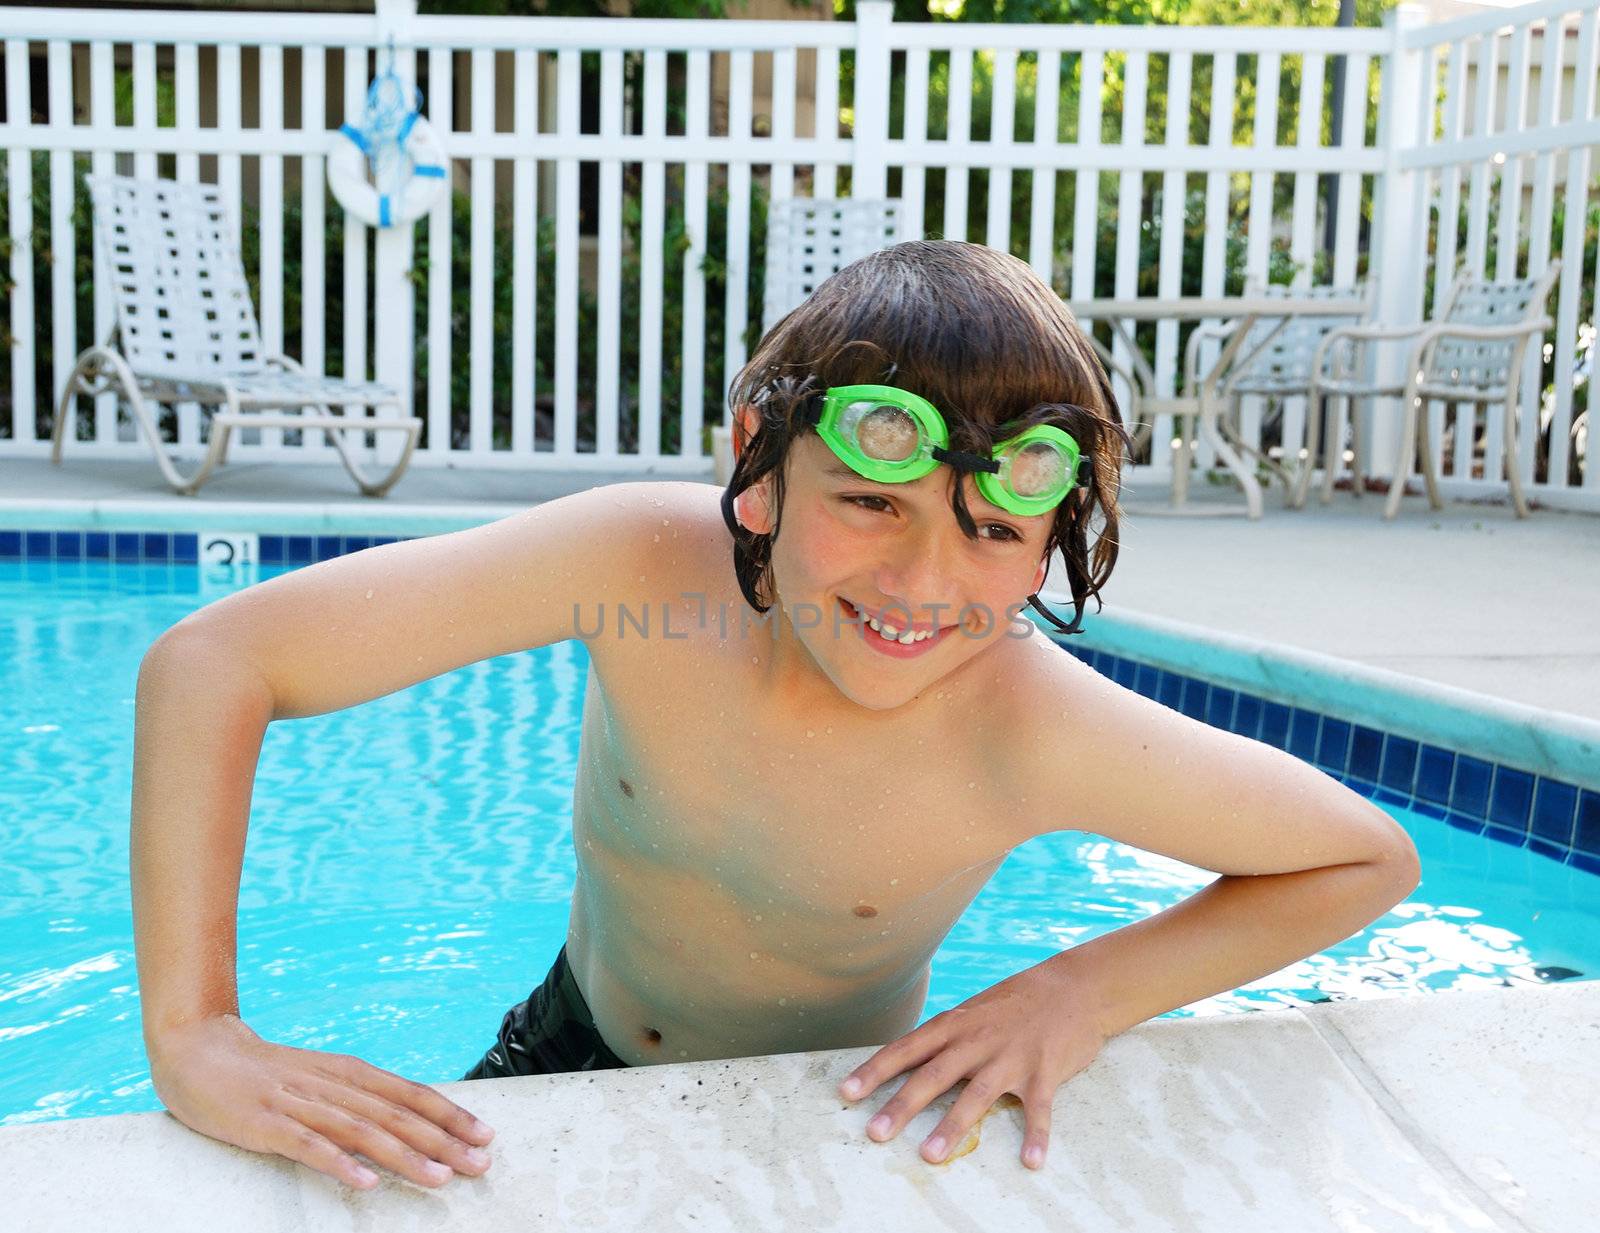 Teen Boy Enjoying Swimming Pool by goldenangel